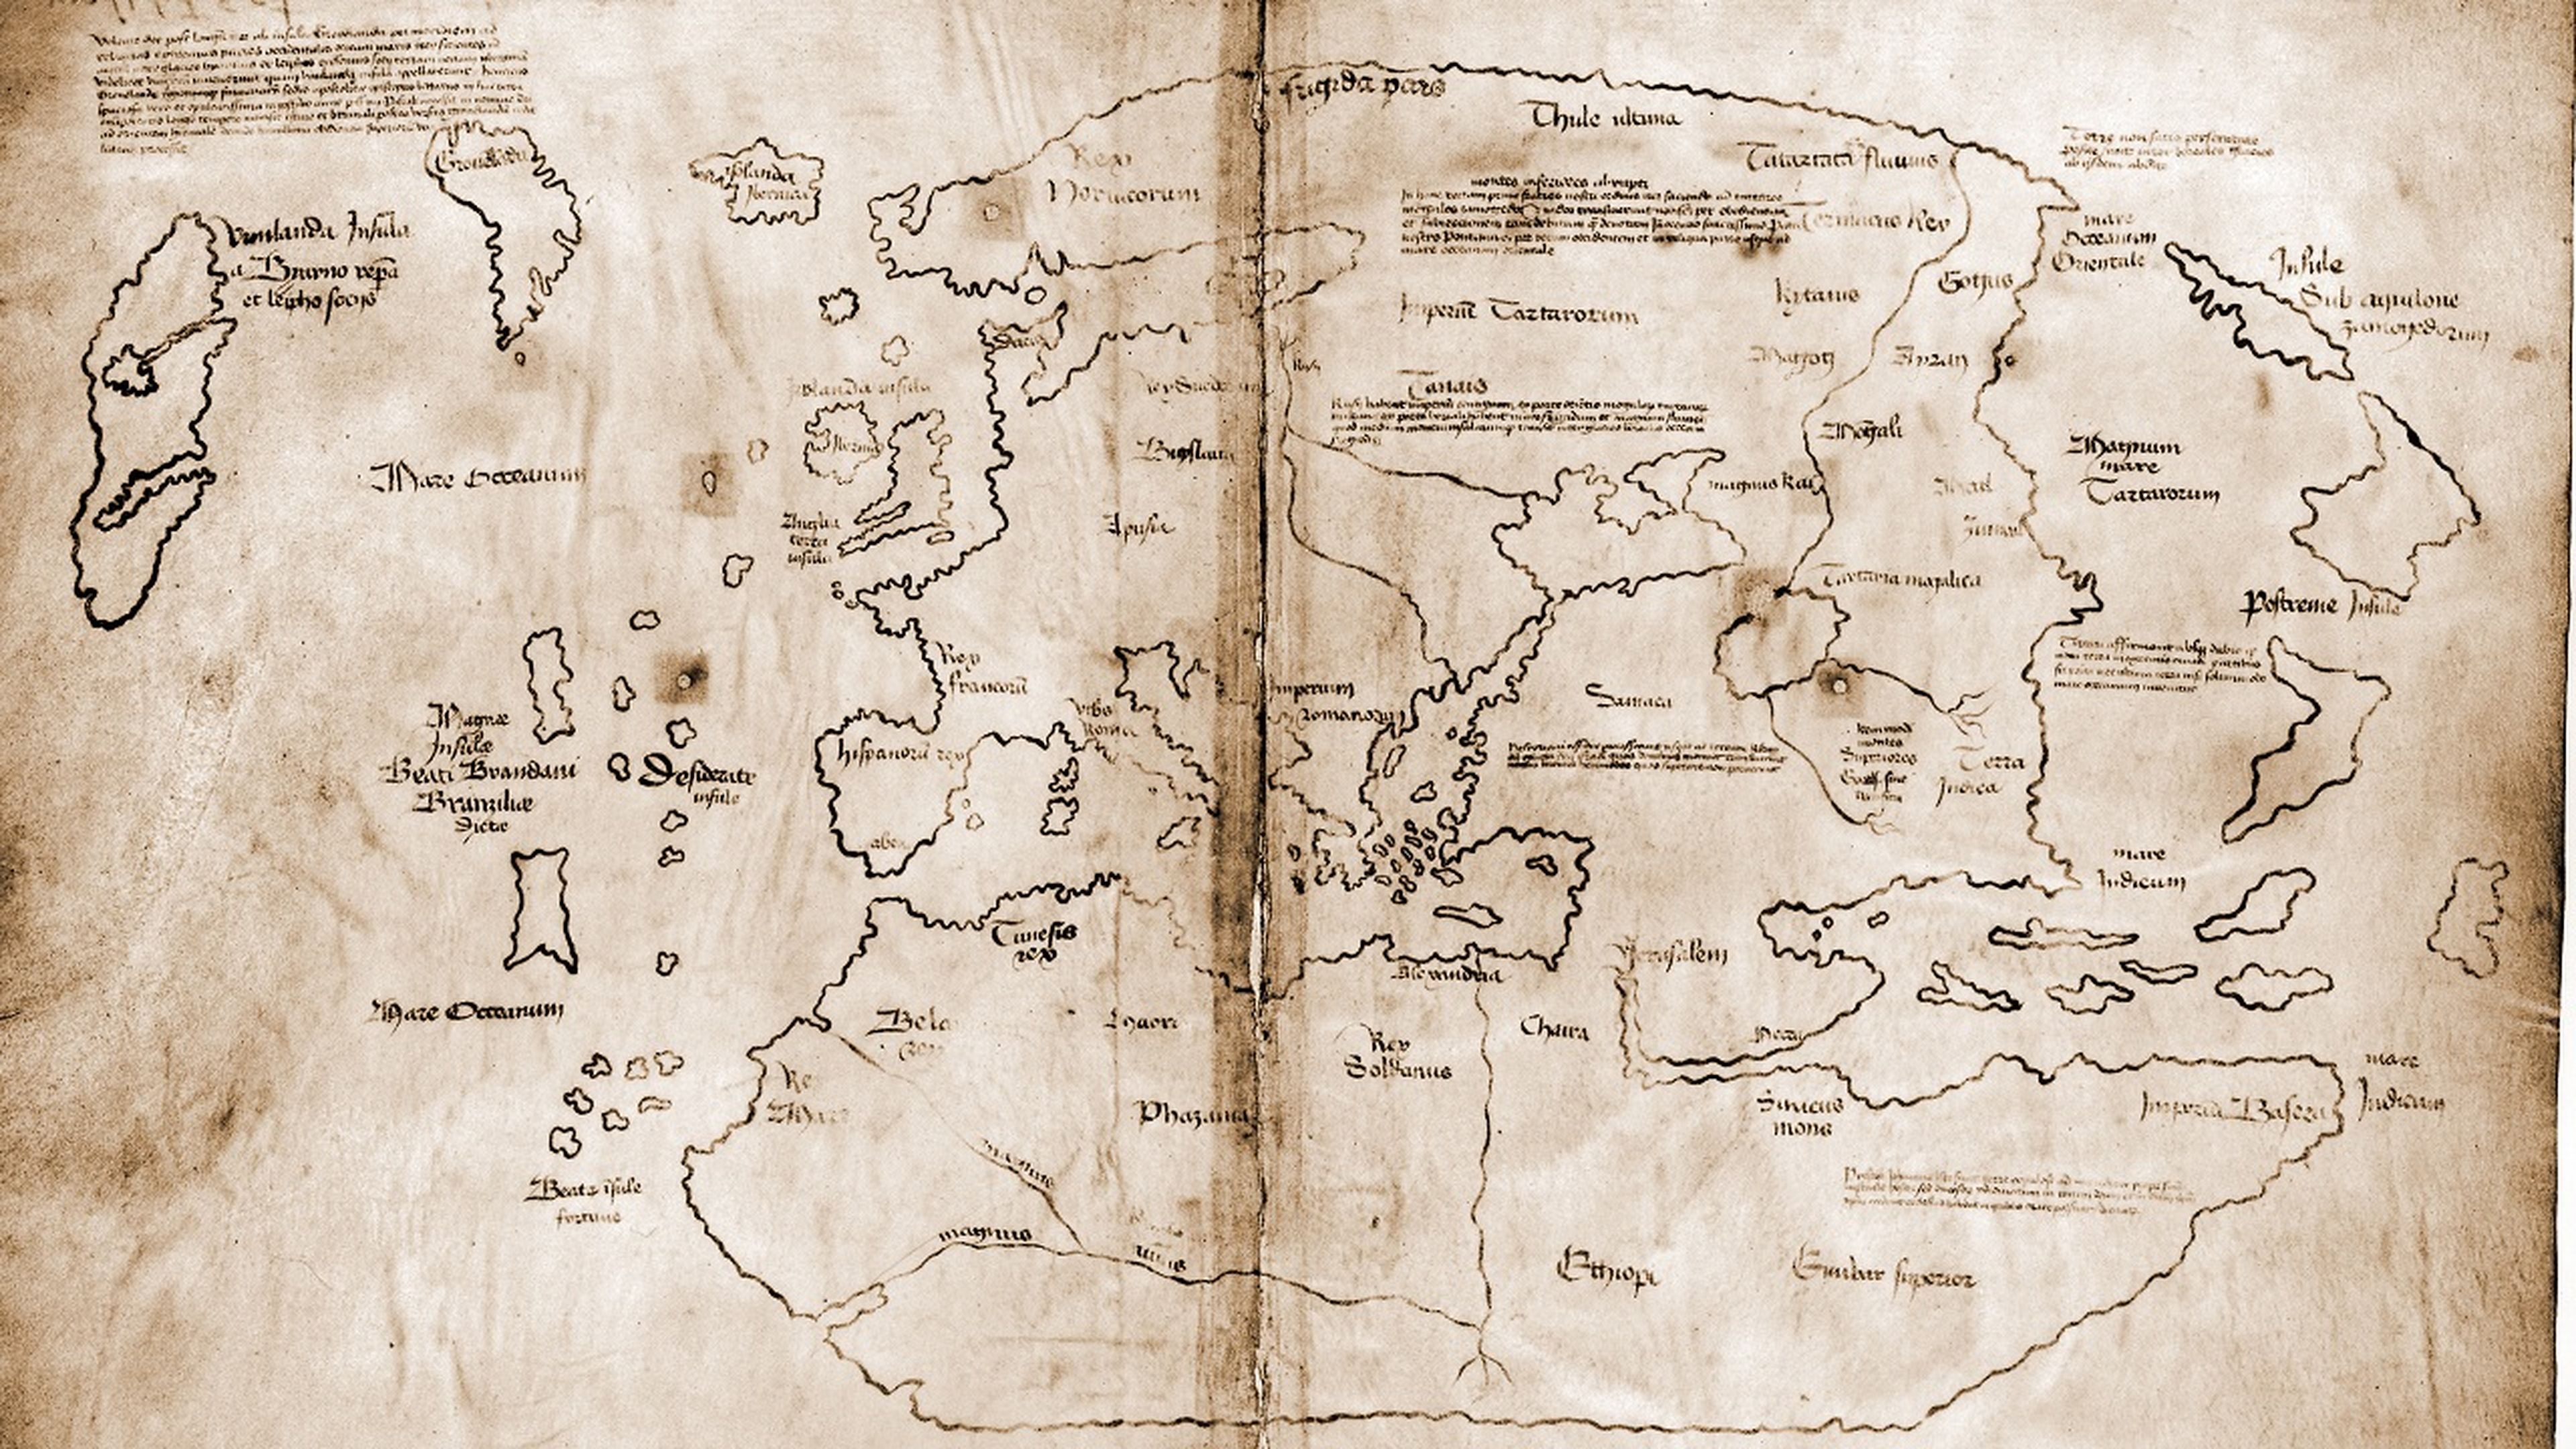 El mapa de Vinlandia, la falsificación que ha engañado al mundo durante décadas